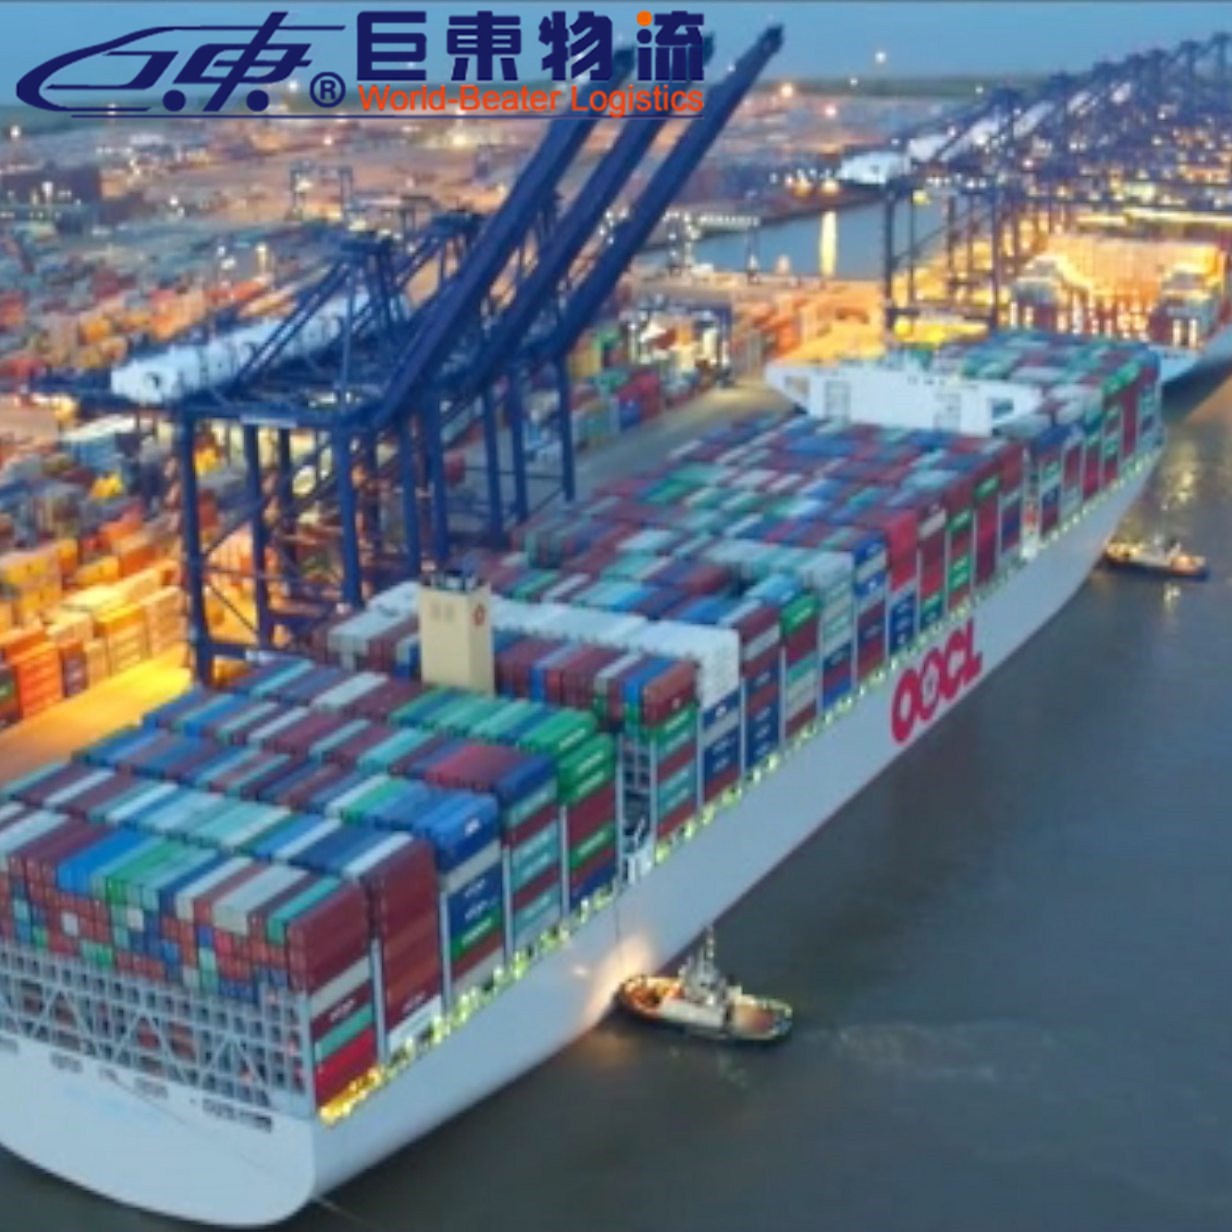 惠州非洲海运专线 上海海运拼箱专线  巨东物流13年海运服务专业可靠